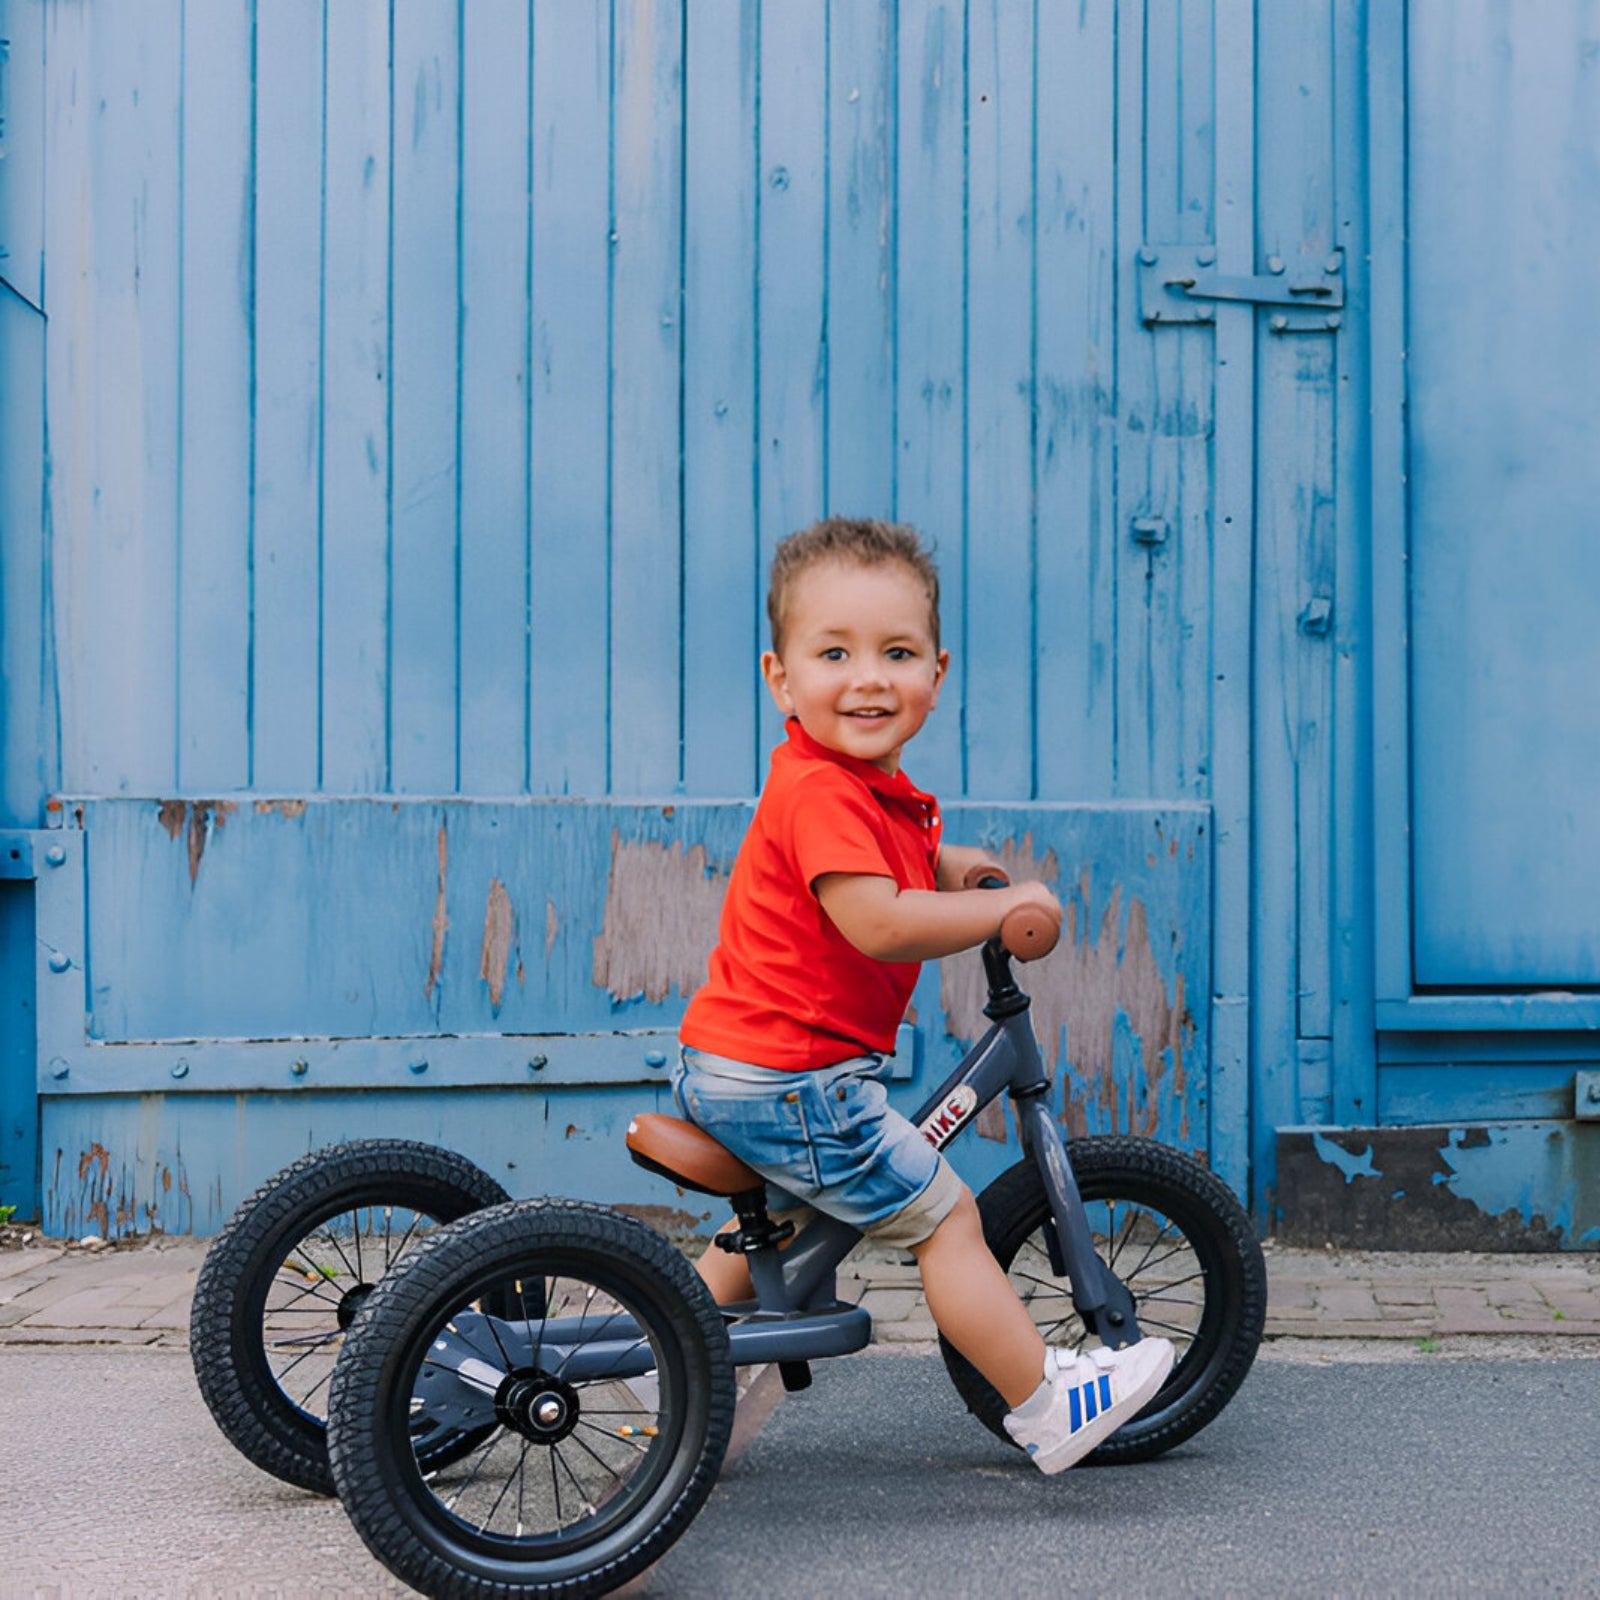 Little boy riding a Grey Trybike balance bike against a rustic blue wall.